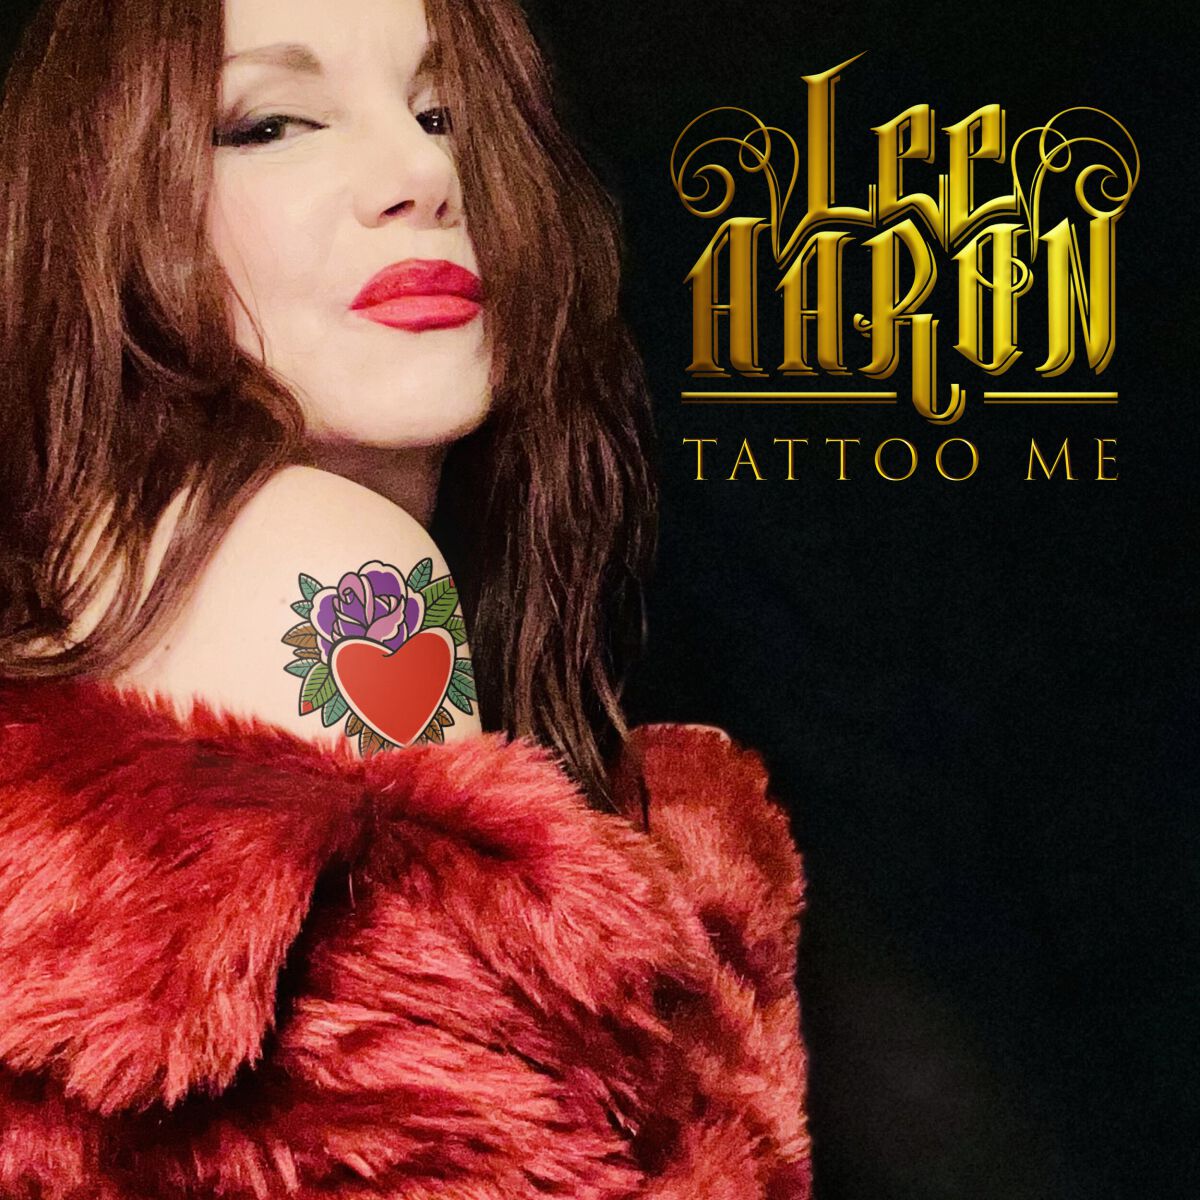 Lee Aaron Tattoo me CD multicolor von Lee Aaron